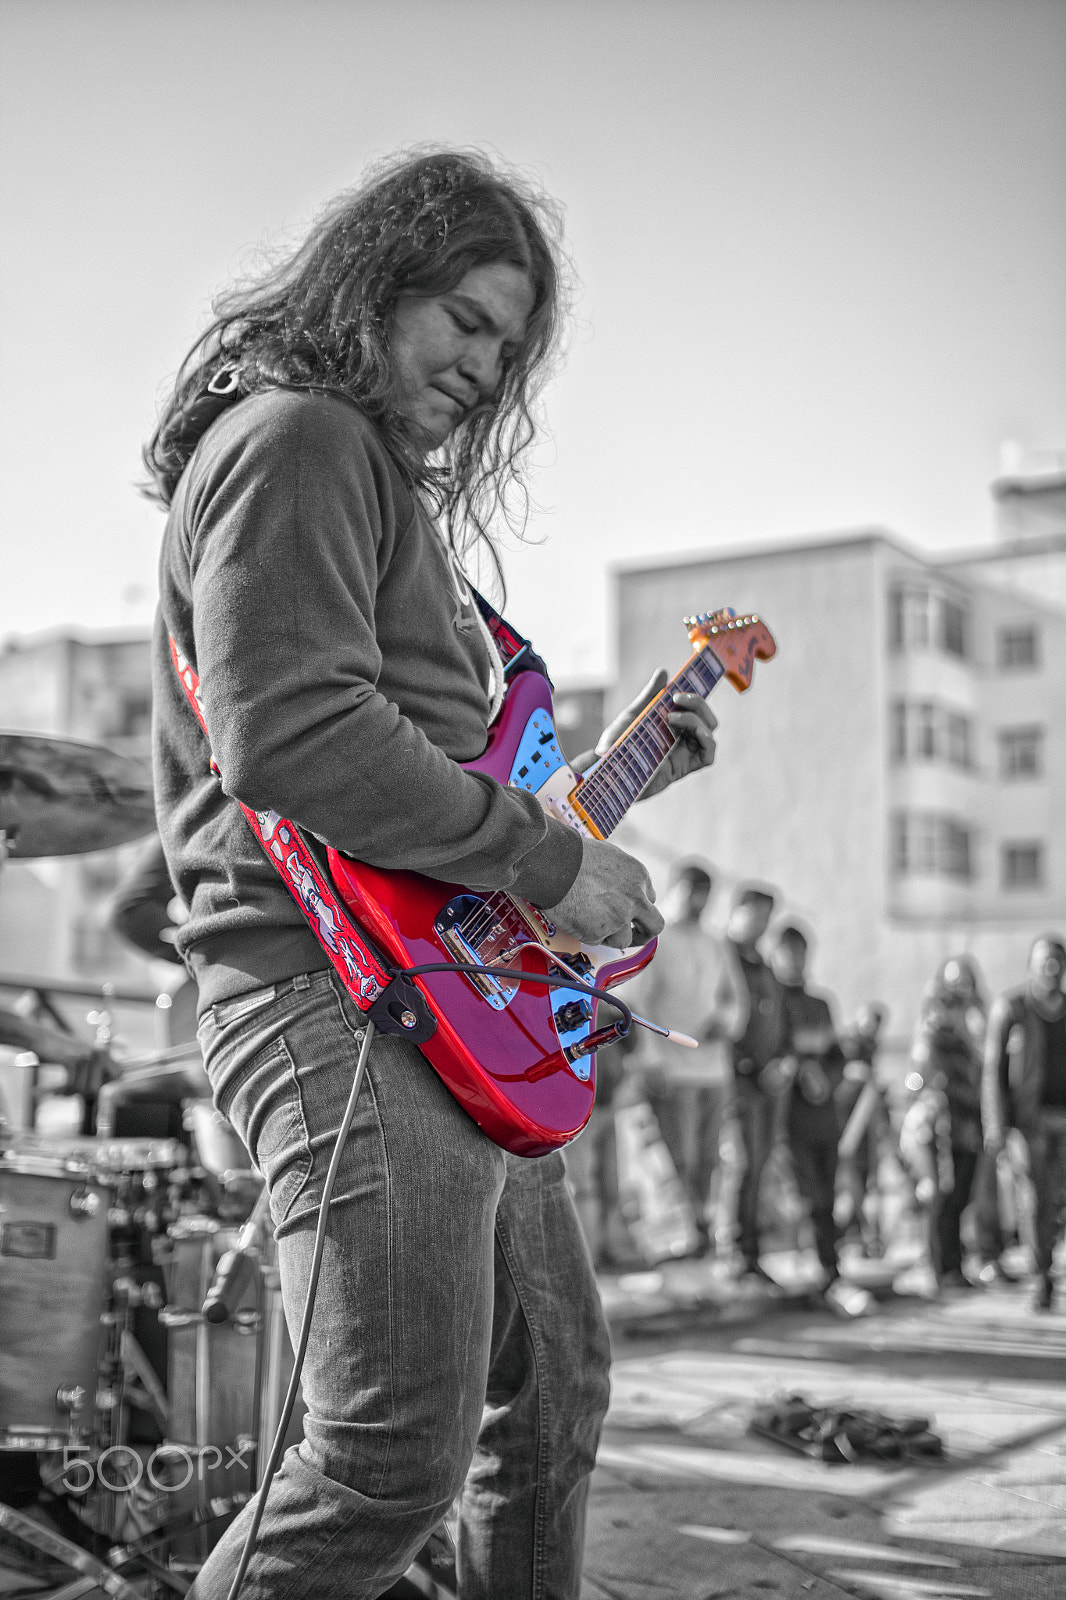 Pentax K-S2 + Sigma sample photo. Guitarra roja photography